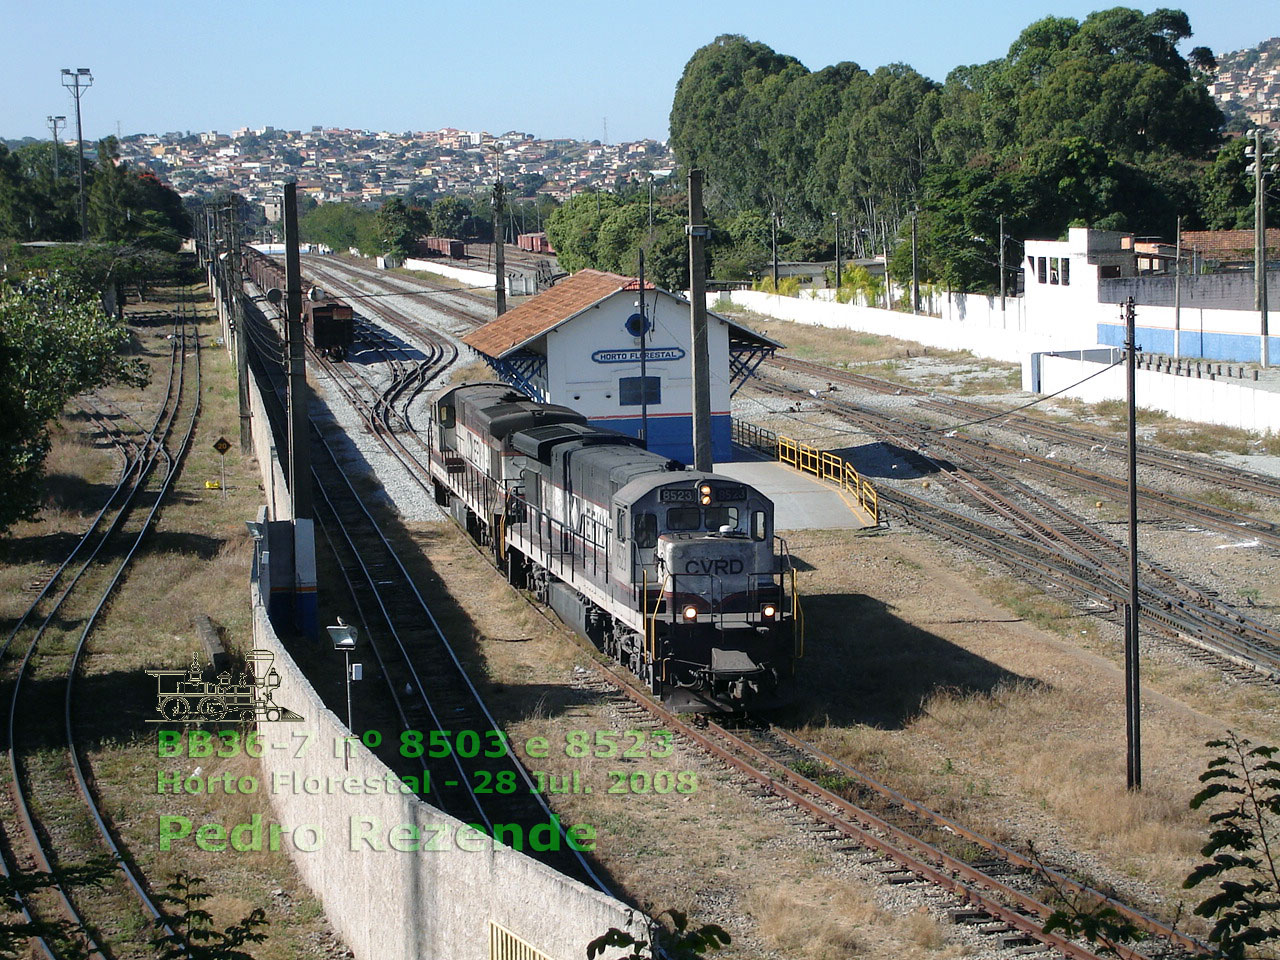 Locomotivas BB36-7 nº 8503 e 8523 da Vale no pátio ferroviário do Horto Florestal